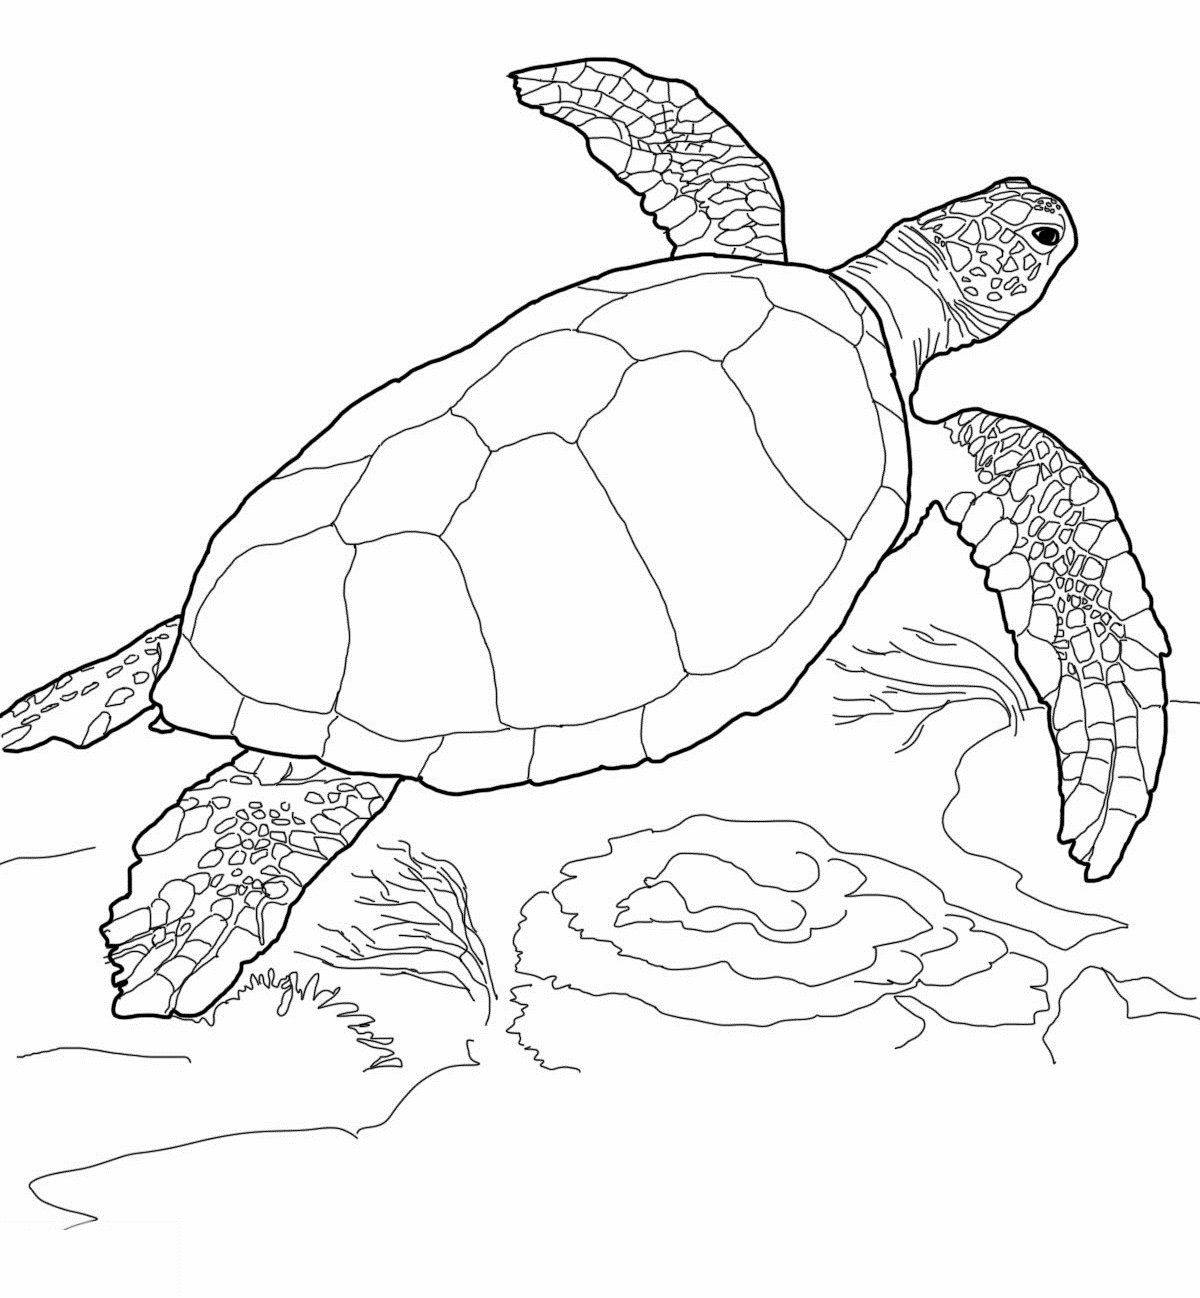 Malvorlagen Schildkröte
 Ausmalbilder Malvorlagen – Schildkröte kostenlos zum